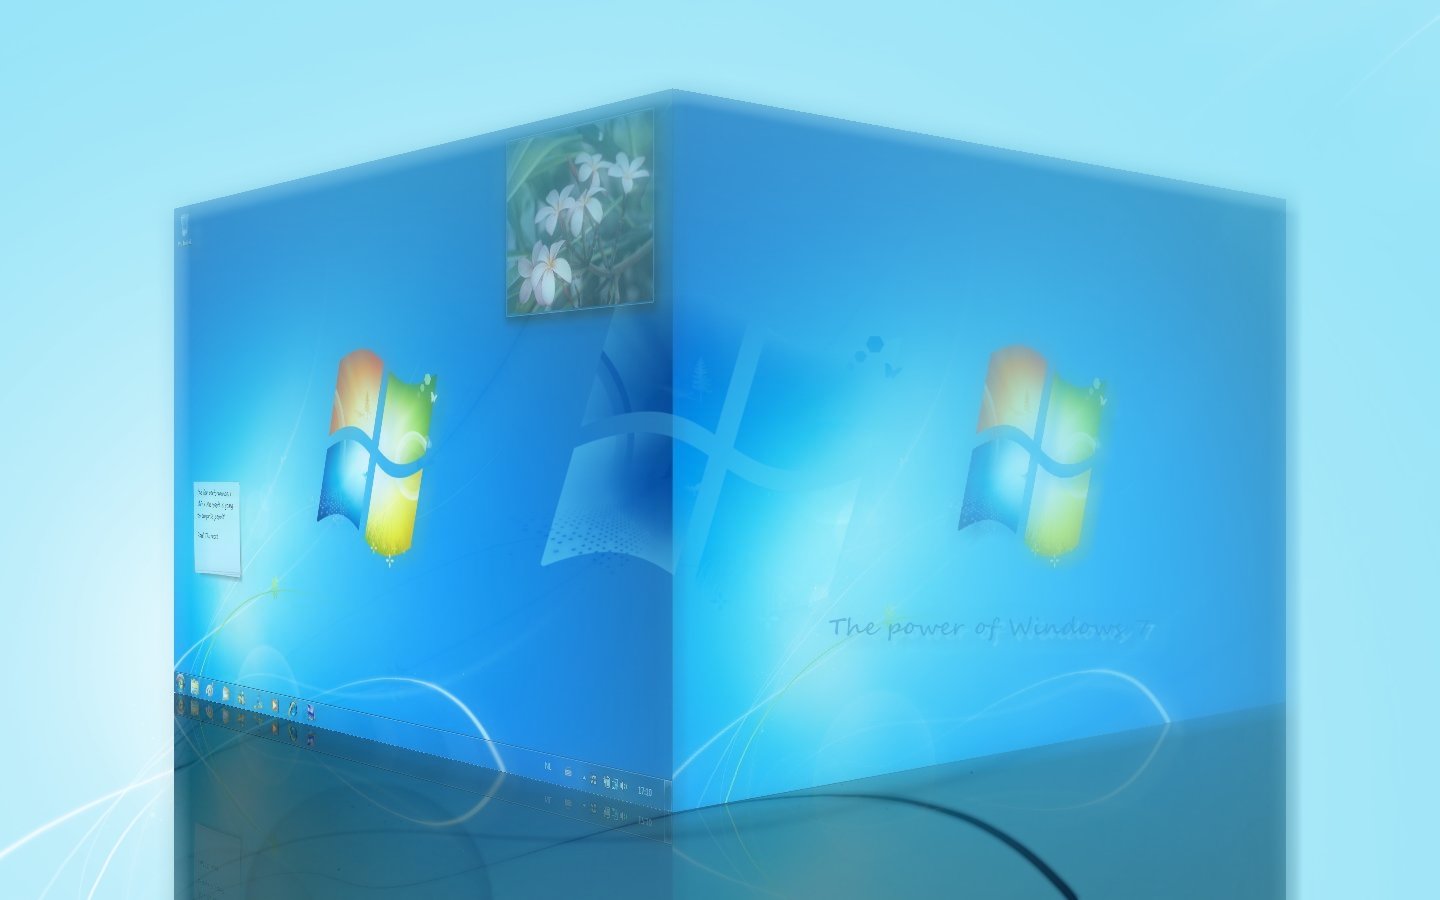 Windows 7 Wallpaper 3D by FeelLike on DeviantArt